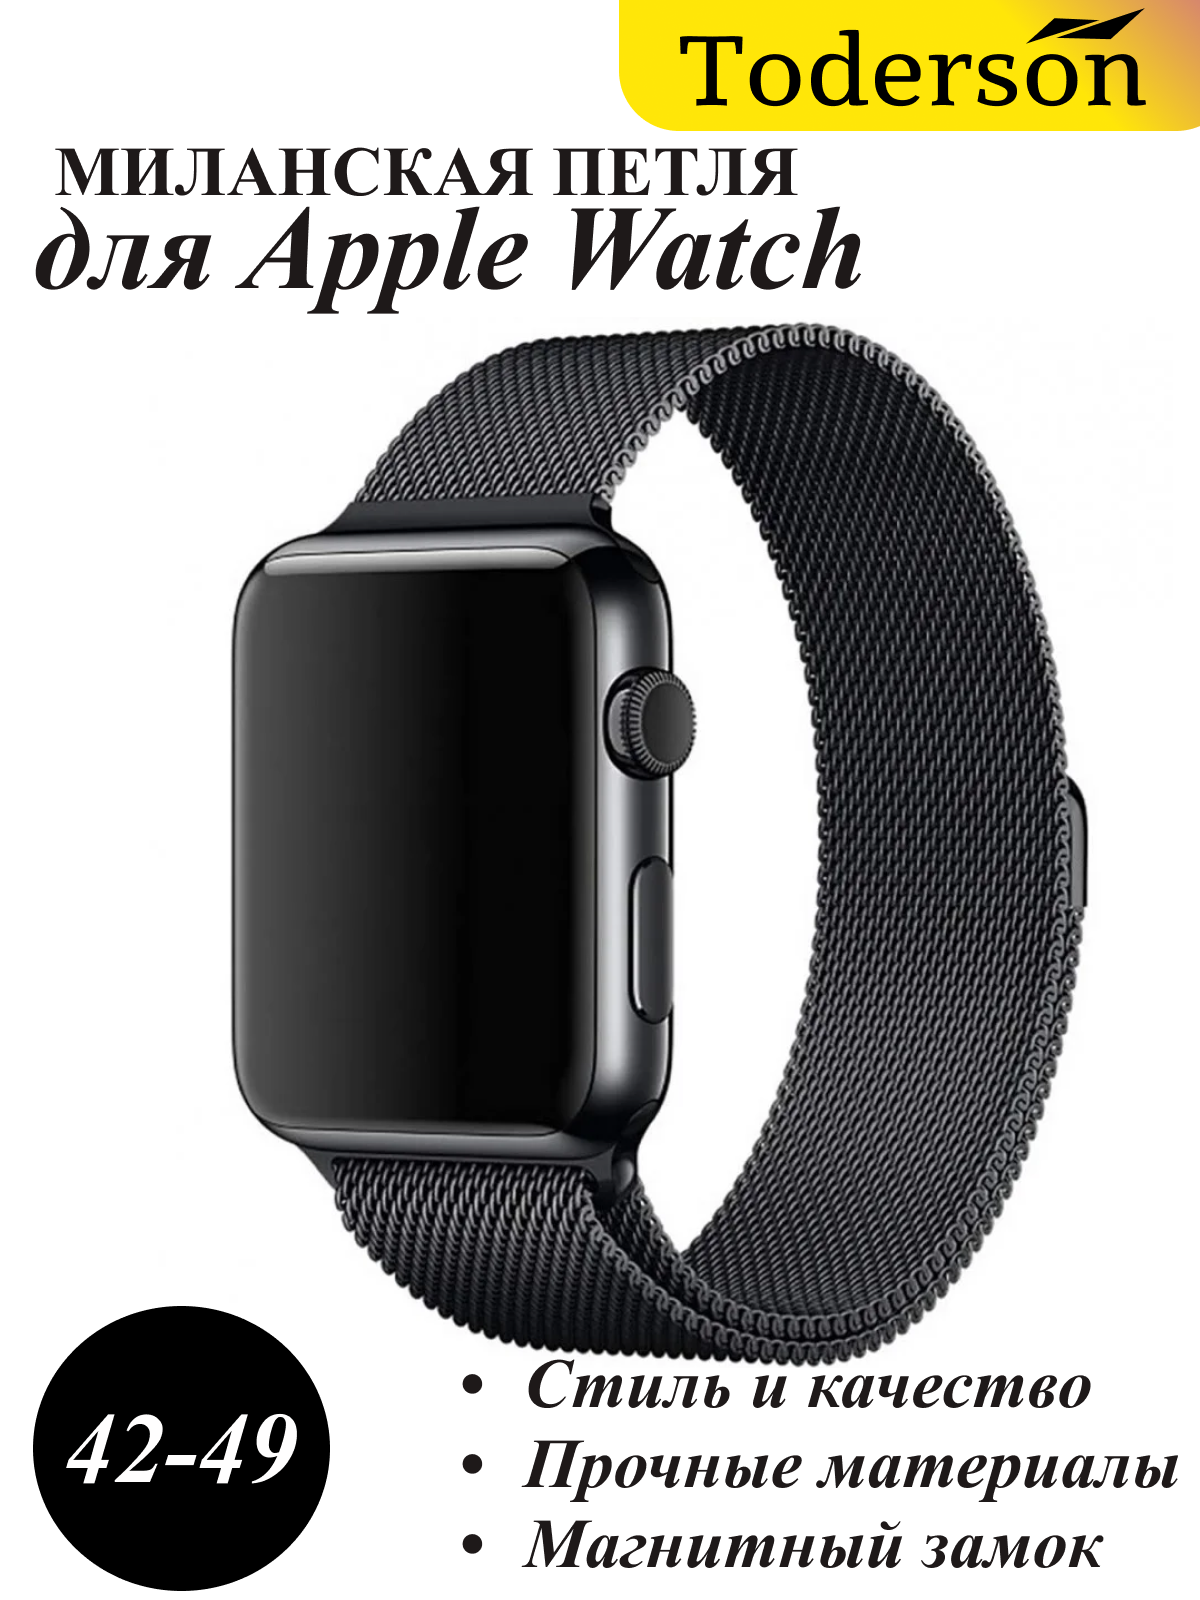 Стальной ремешок Миланская петля для Apple watch 42-49 мм стальной, для смарт-часов